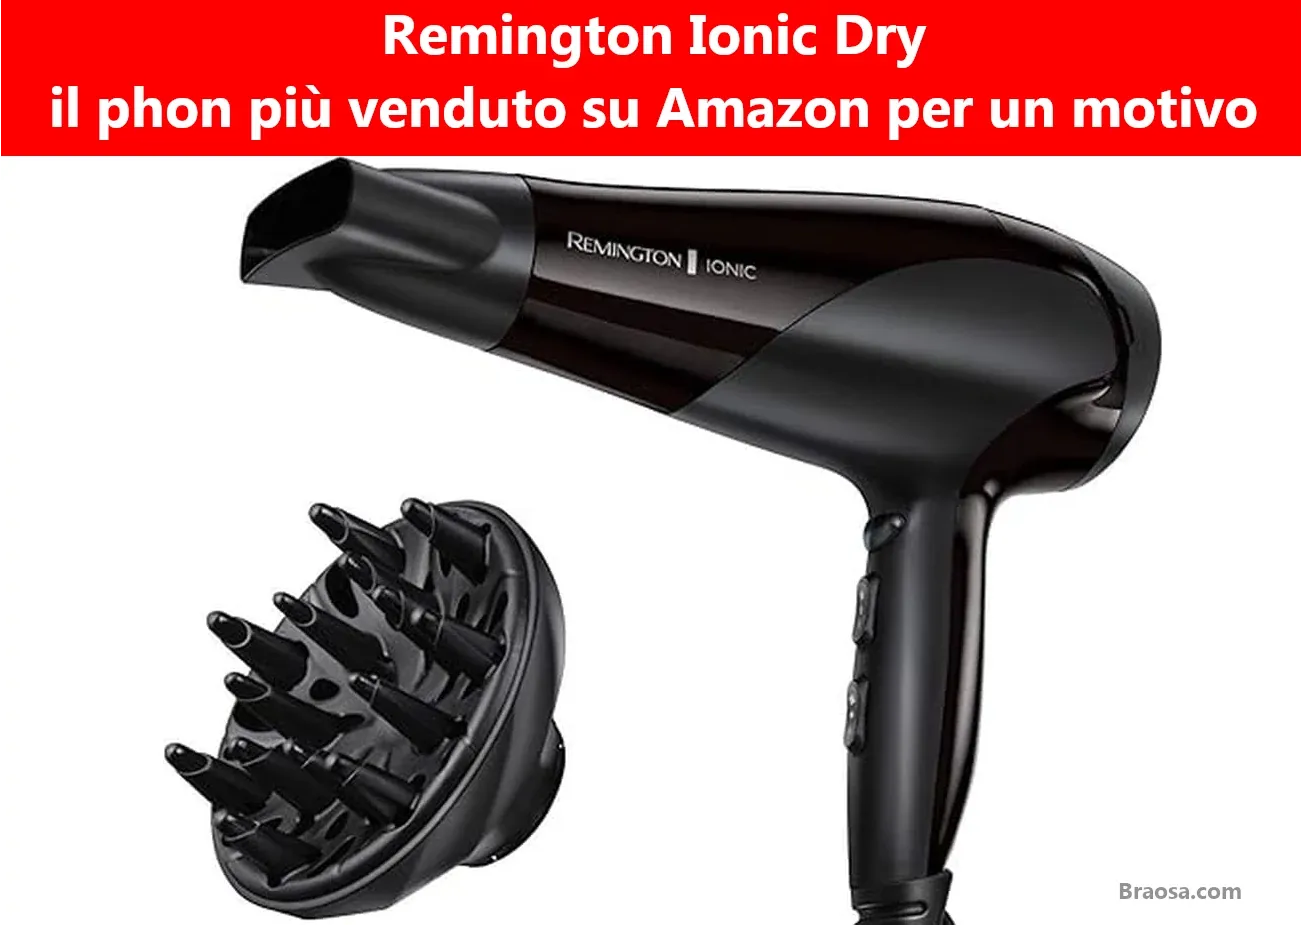 Remington Ionic Dry: il phon più venduto su Amazon